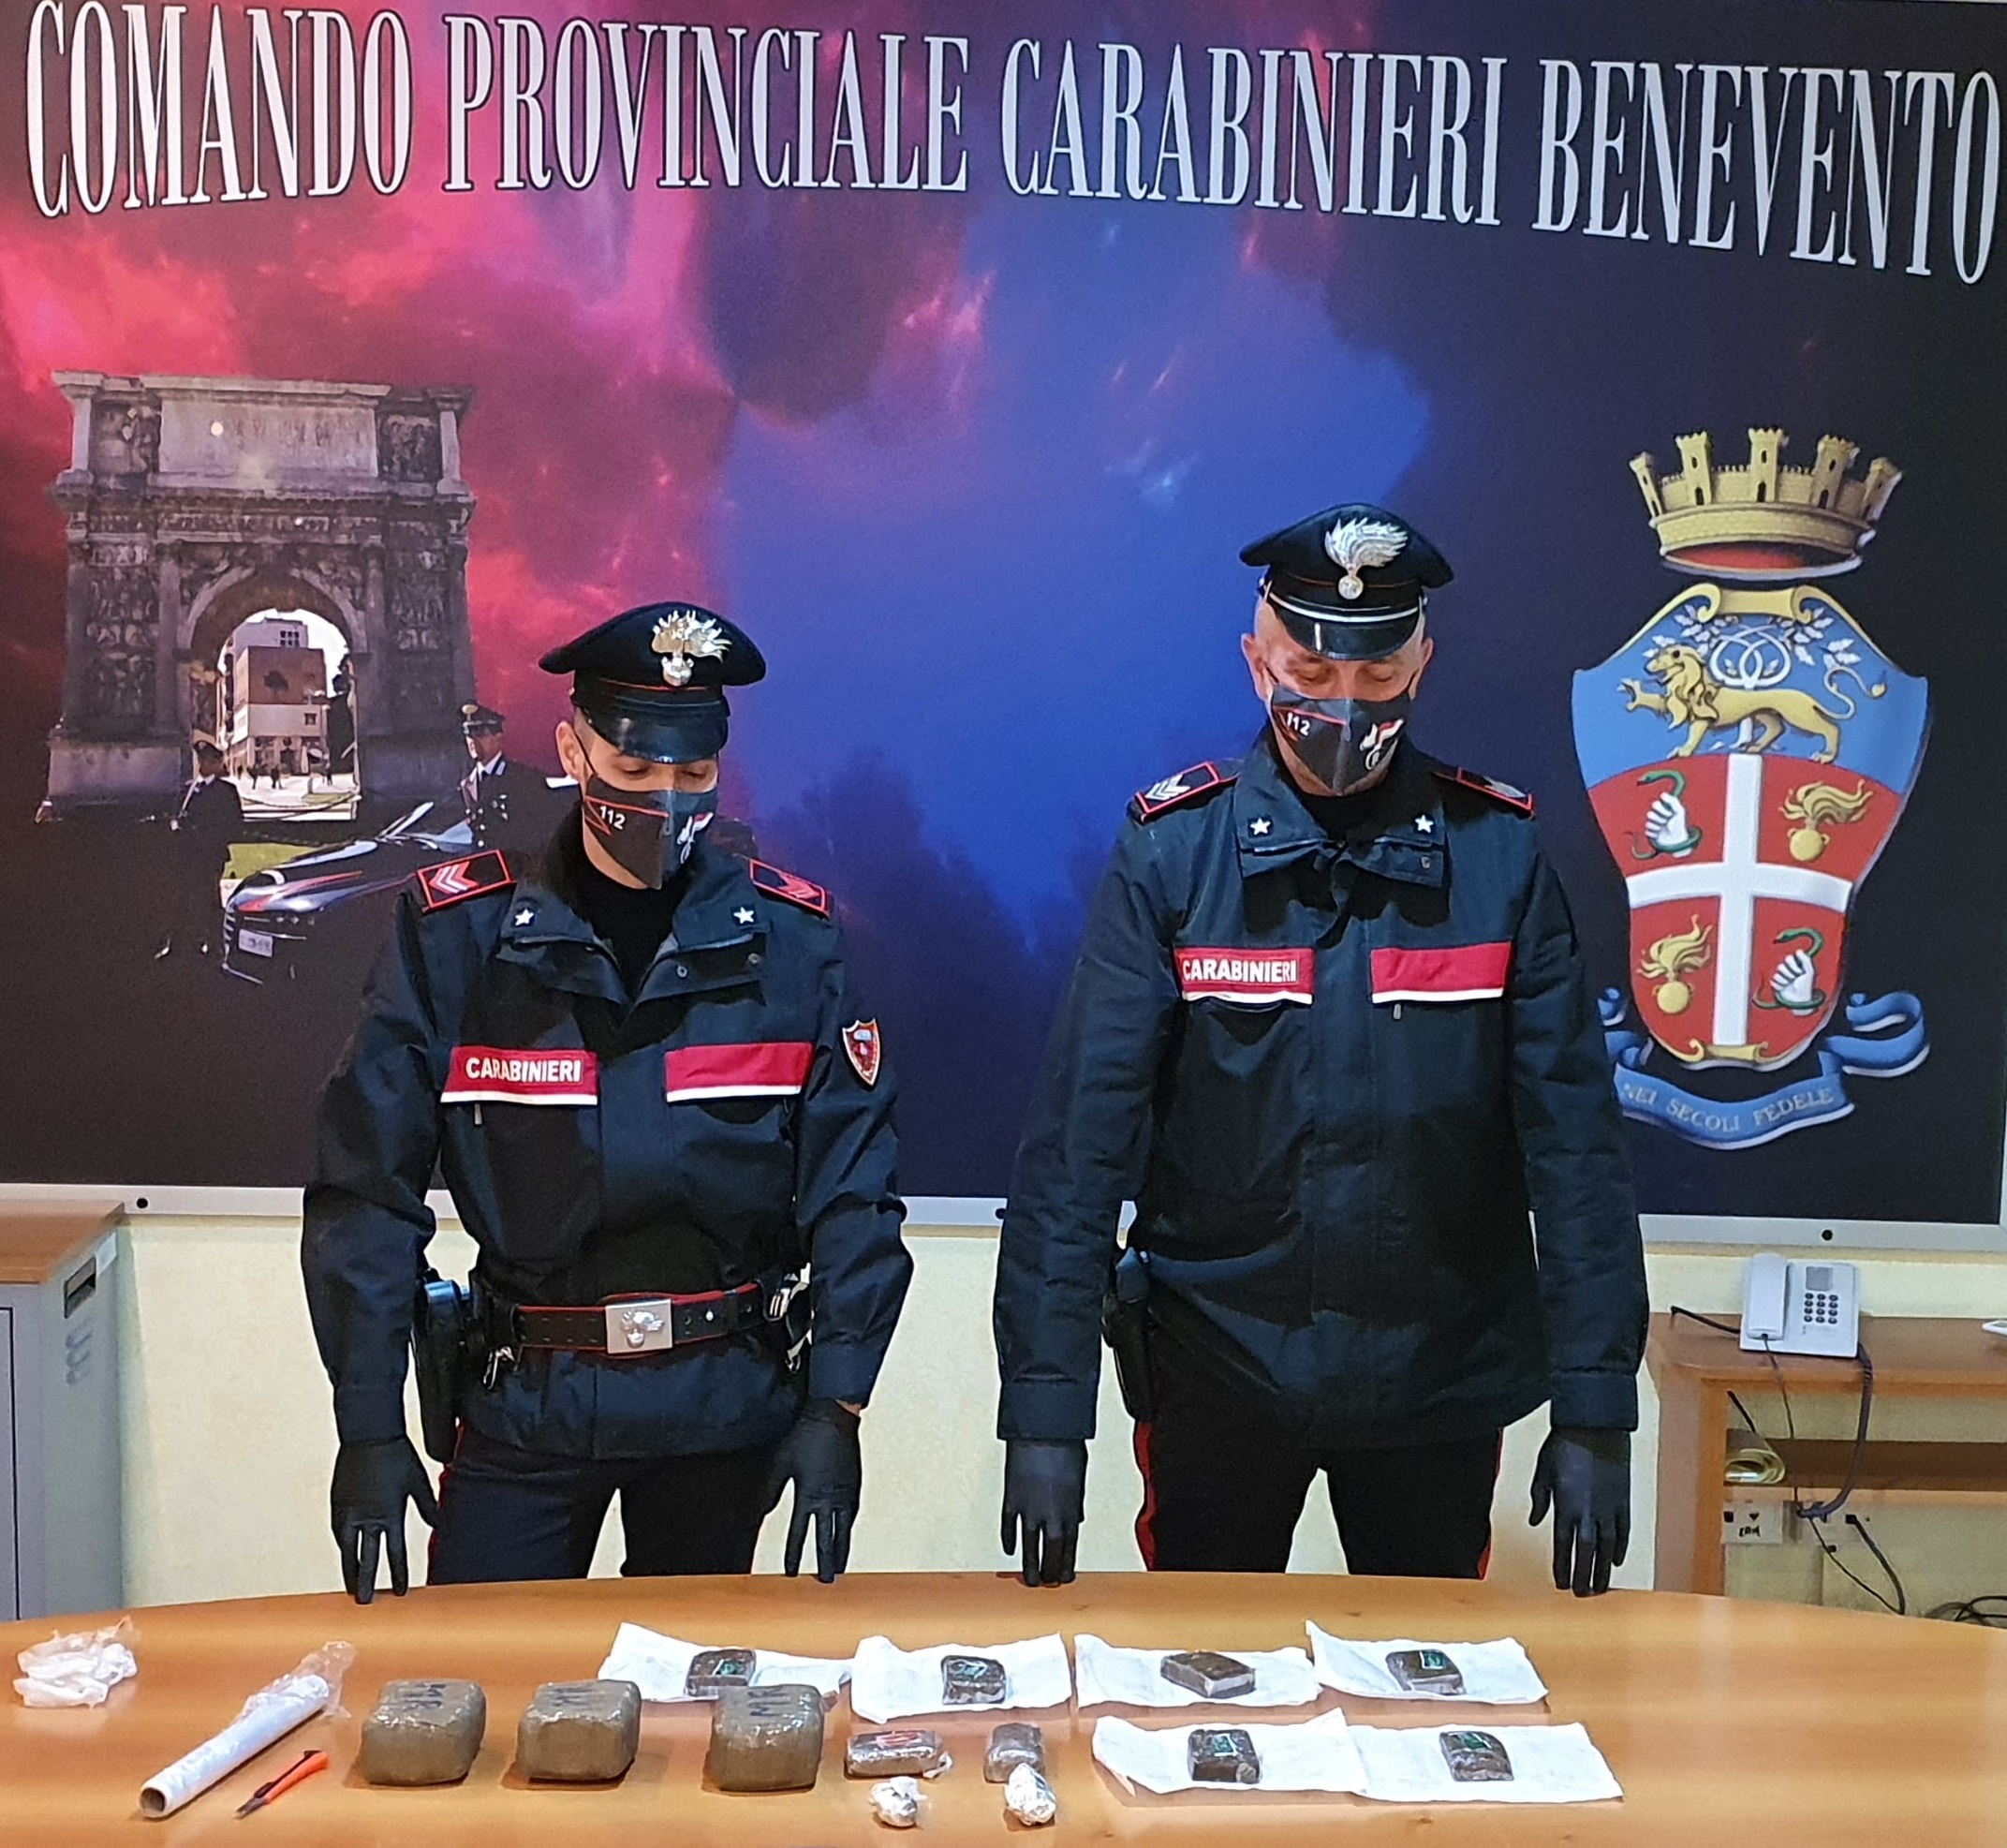 Carabinieri sequestrano quasi 2 kg di sostanza stupefacente e armi. Una persona arrestata, sei denunciati, tre fogli di via e una persona segnalata